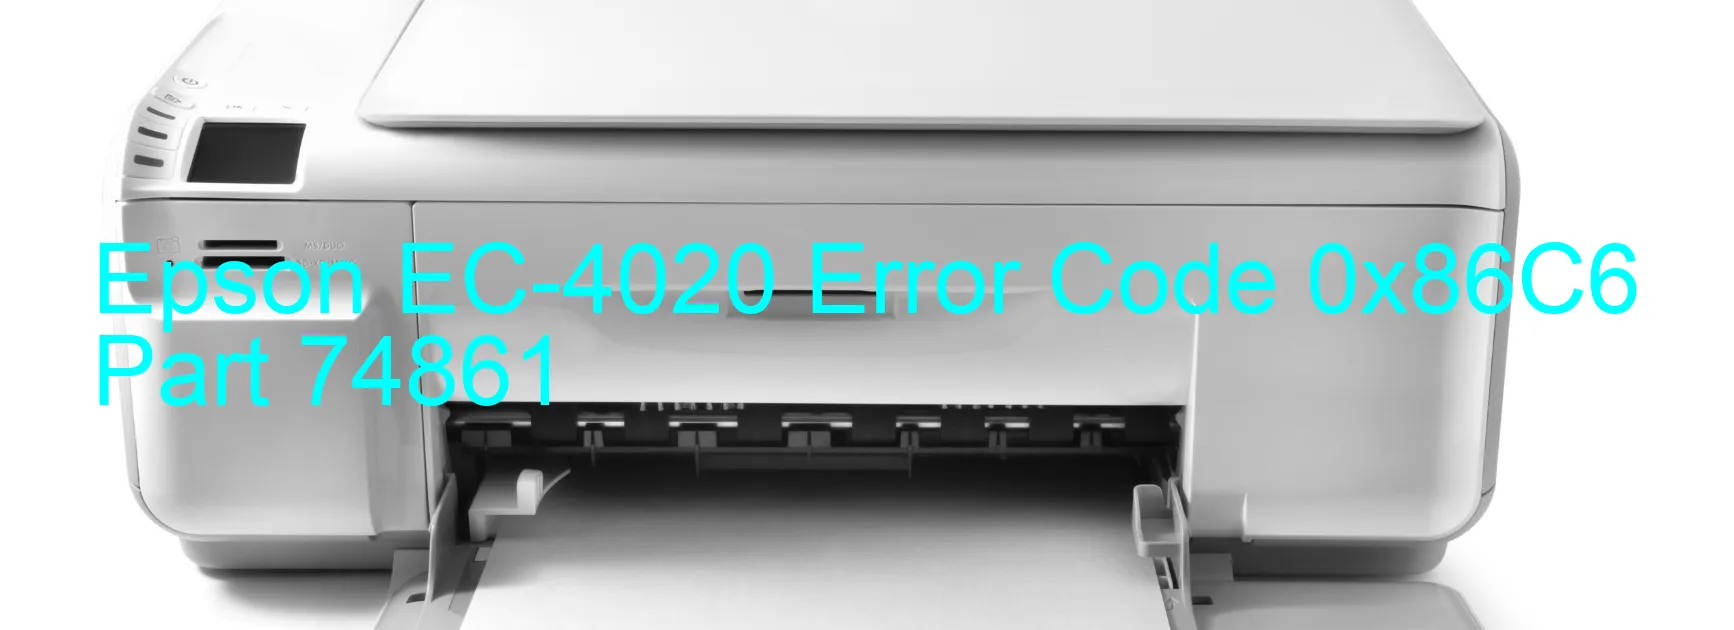 Epson EC-4020 Error Code 0x86C6  Part 74861